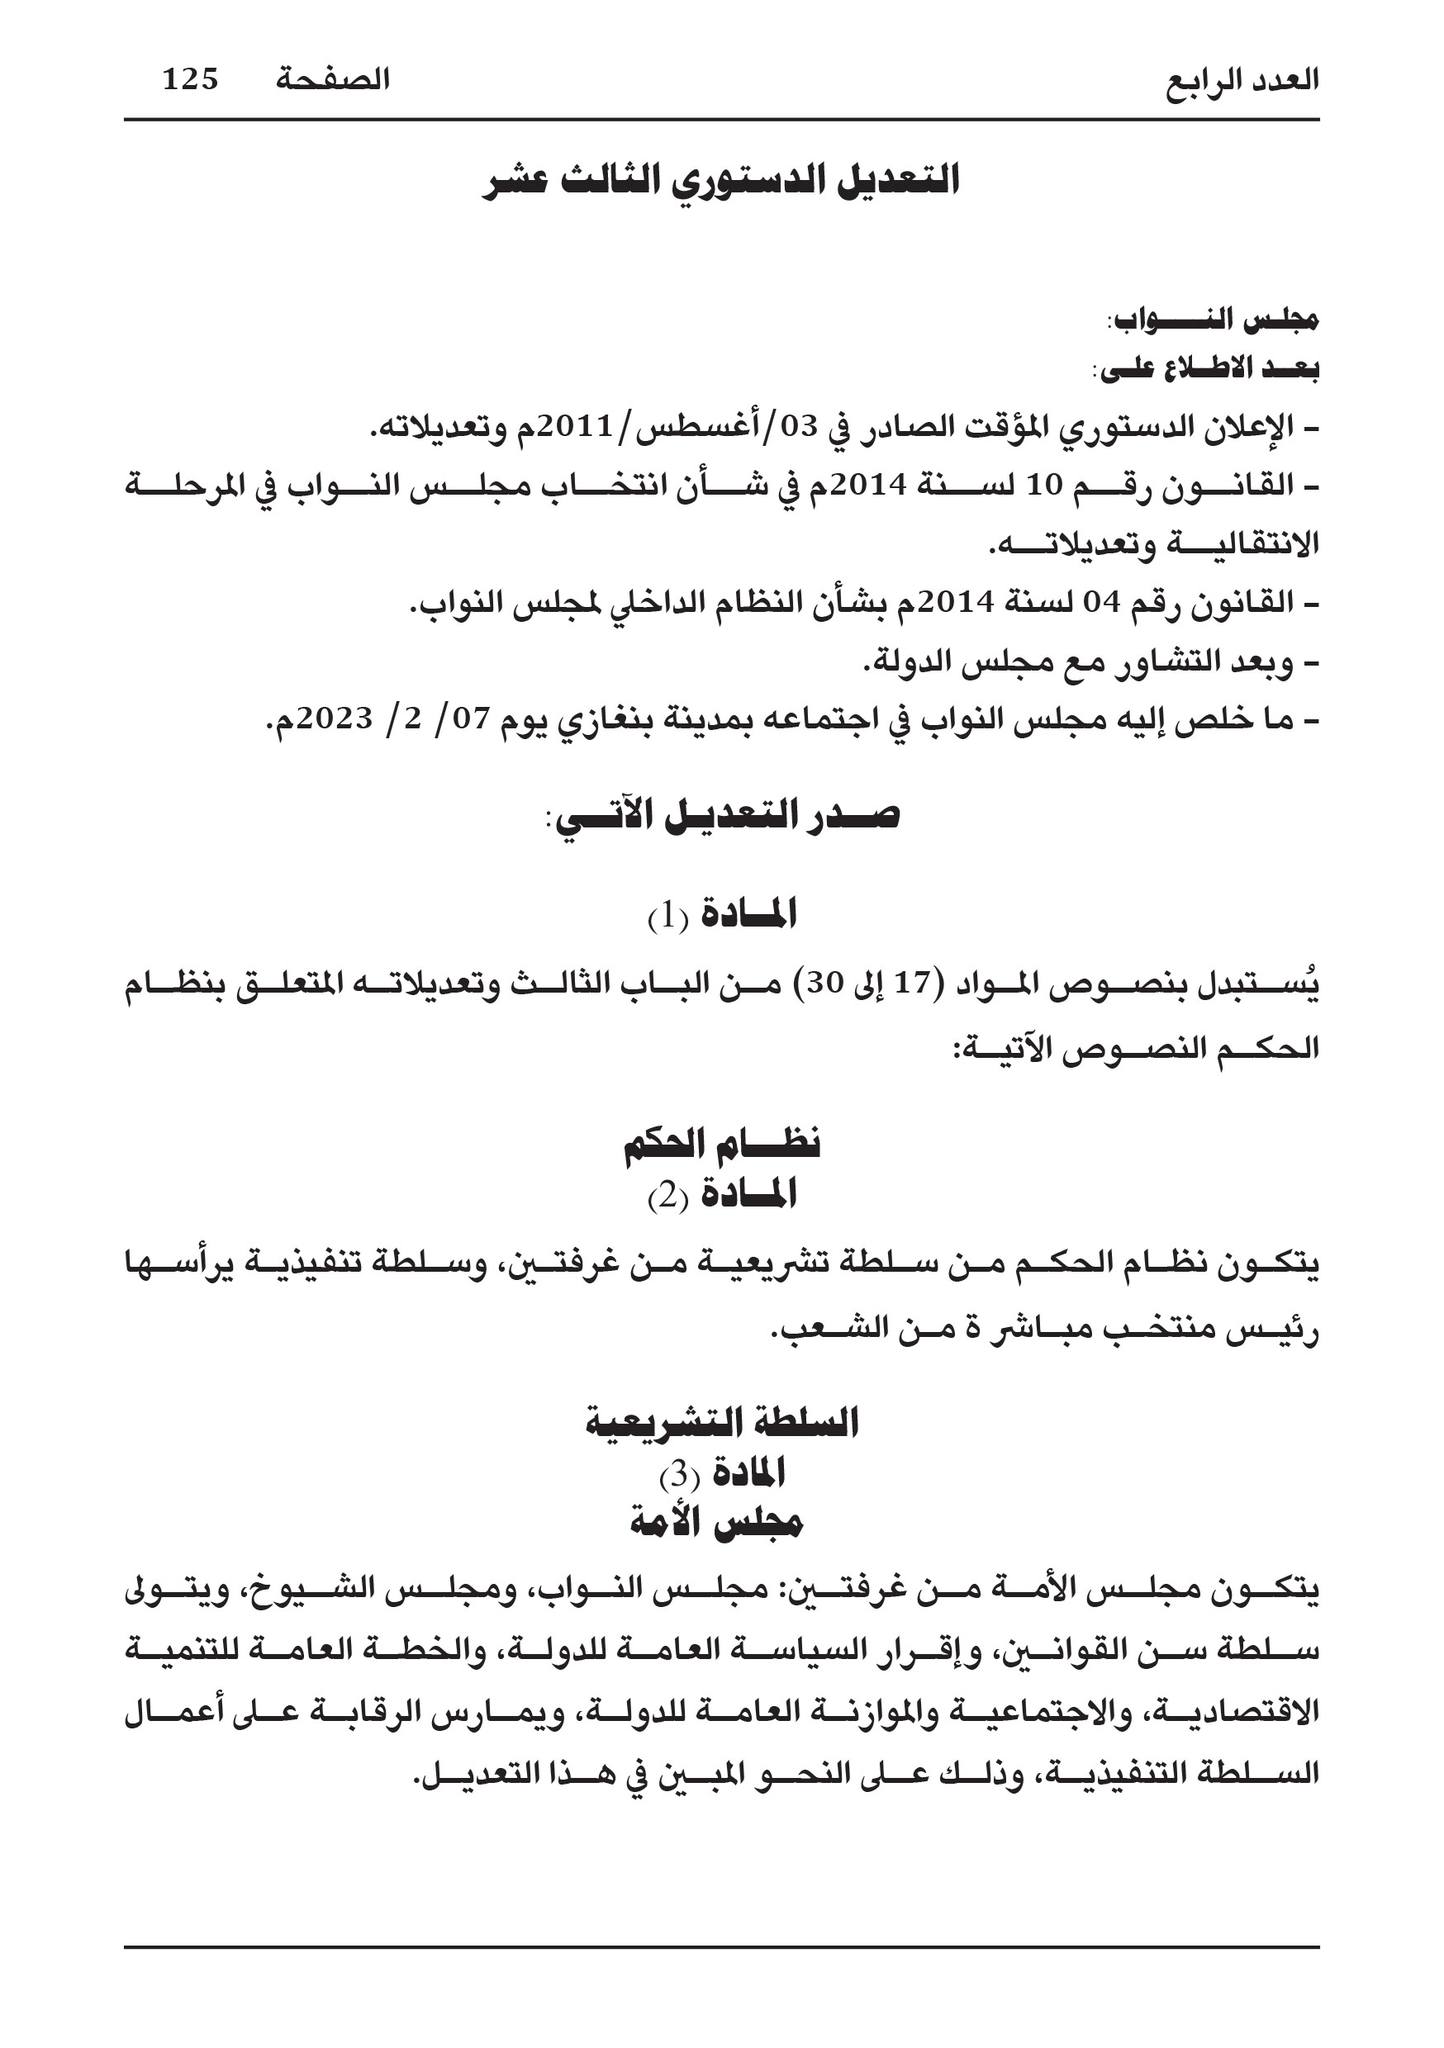 التعديل الثالث عشر للإعلان الدستوري الليبي